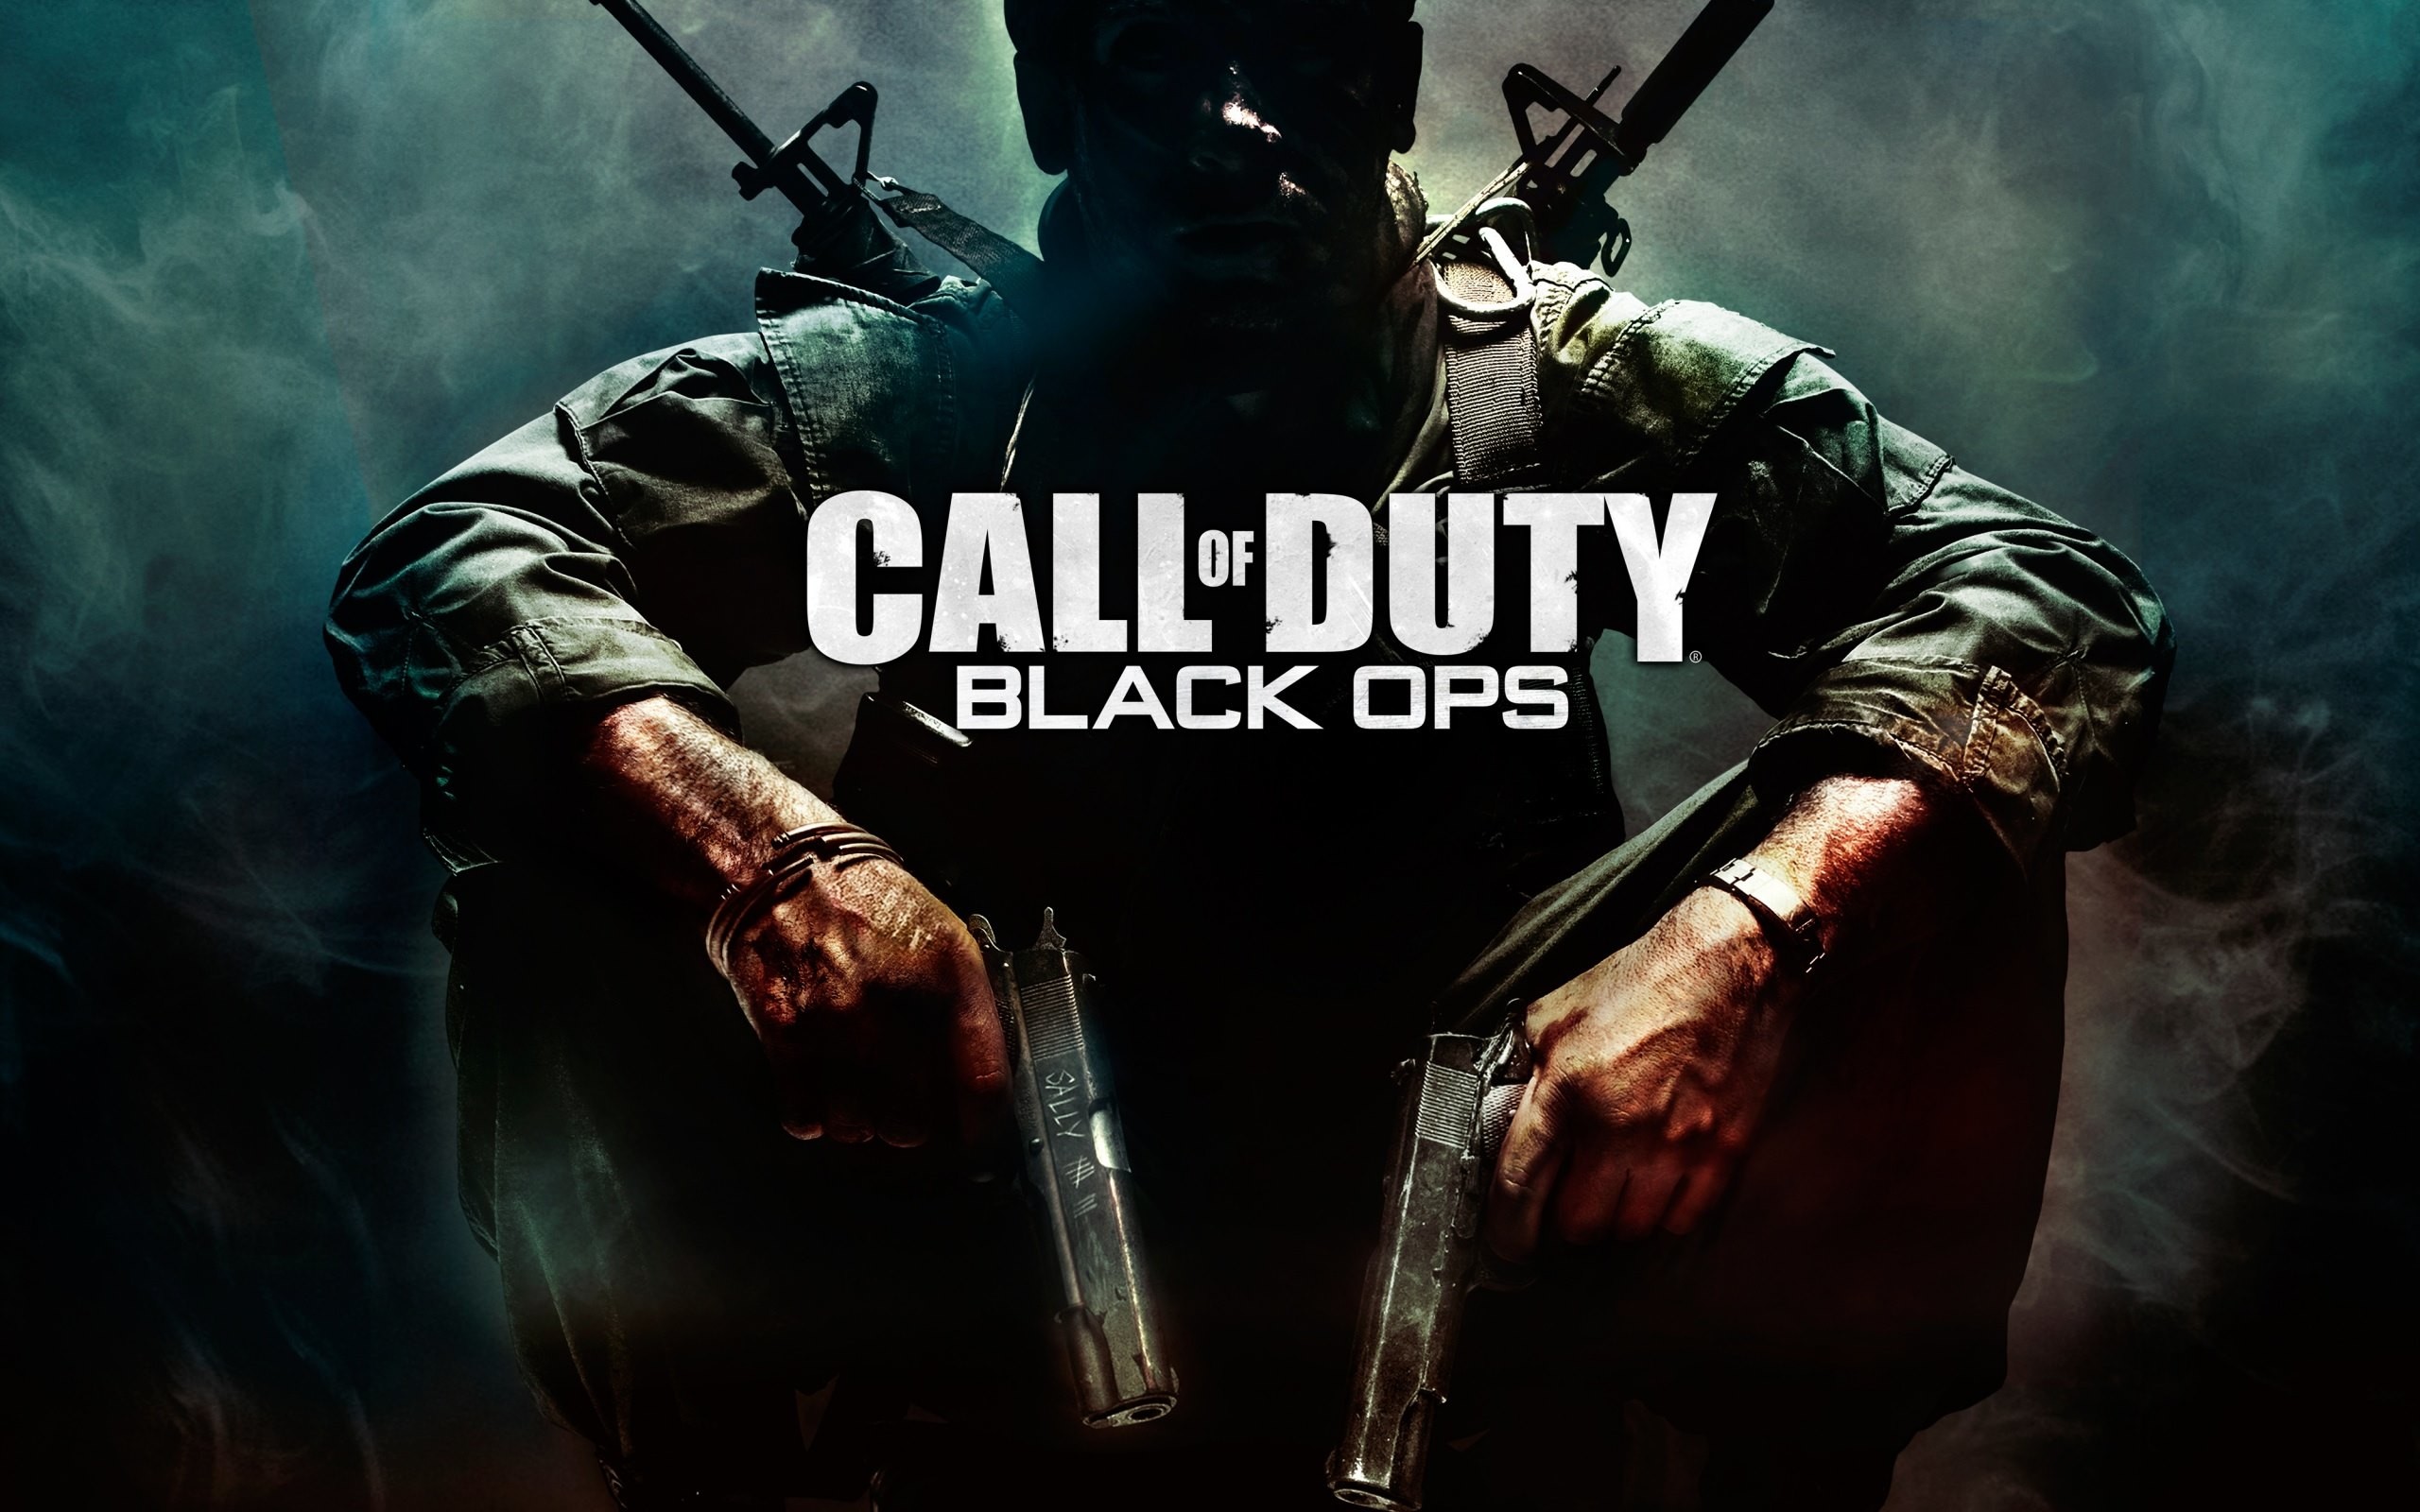 Trò chơi Call of Duty hay là một trong những thể loại huyền thoại của thế giới game? Hãy tải về ngay những hình nền Call of Duty đỉnh cao để tối ưu hóa trải nghiệm chơi game của bạn. Một trải nghiệm game hoàn hảo và đầy thử thách đang chờ đợi bạn!